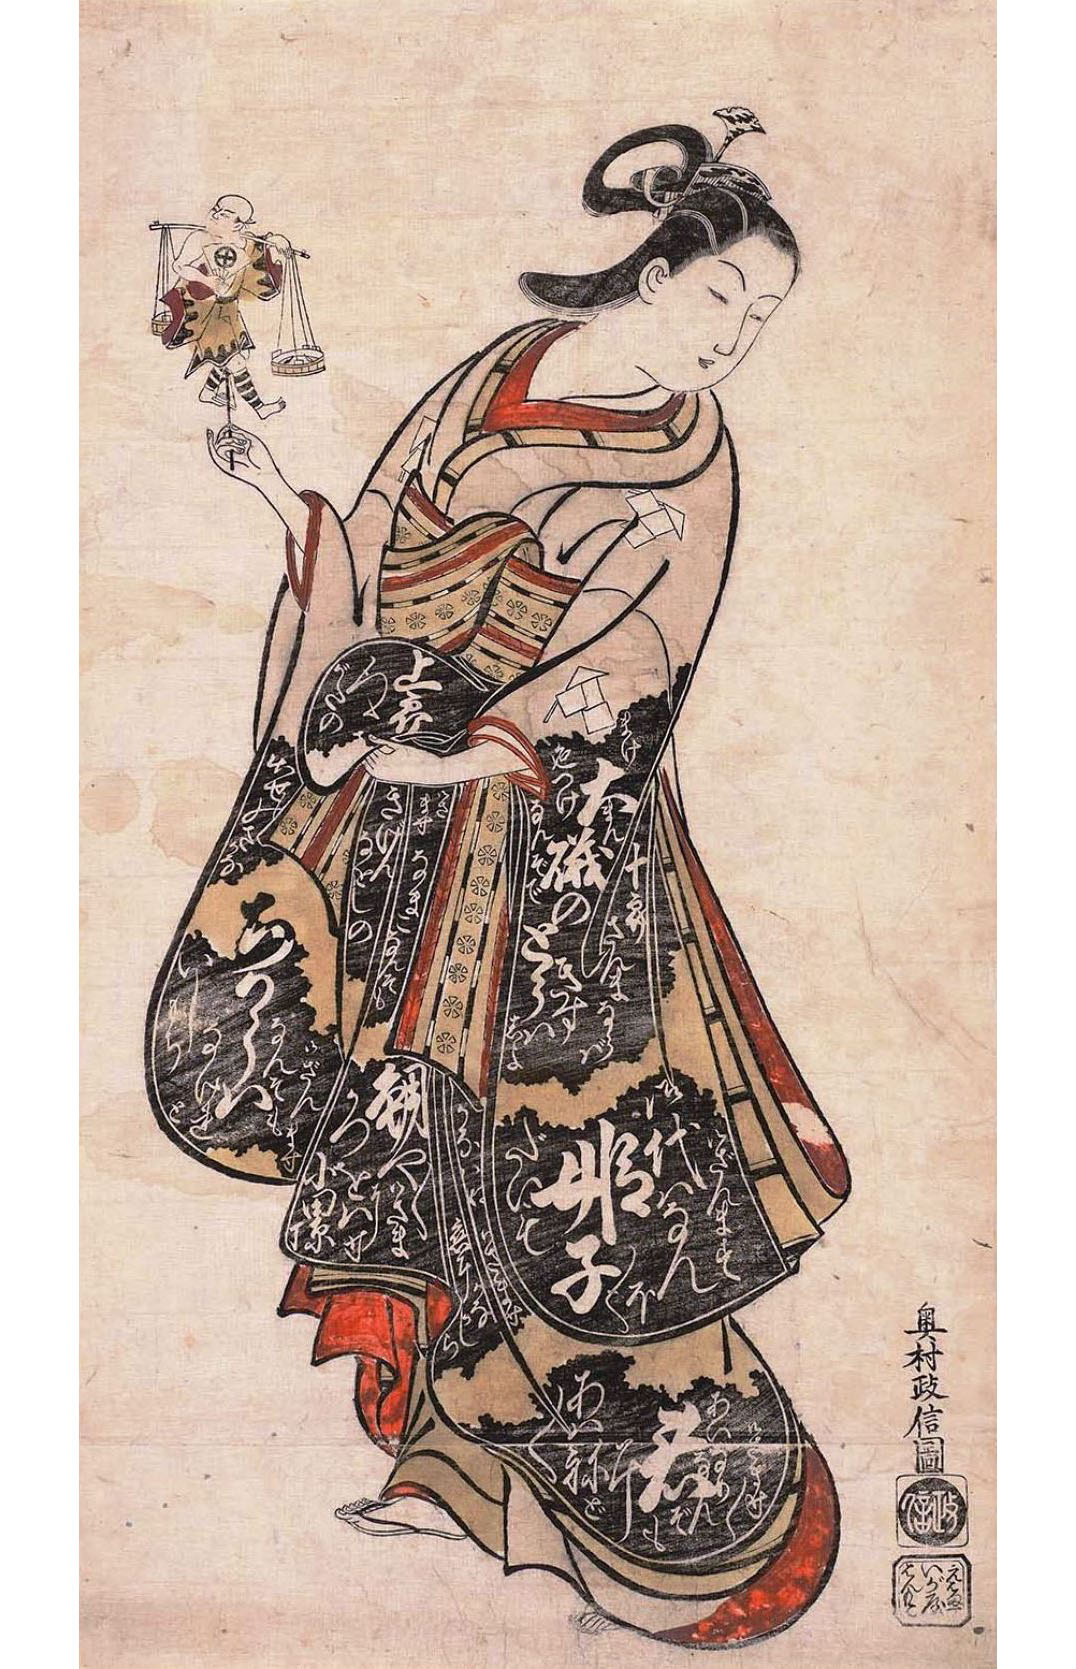 Окумура Масанобу. "Женщина держит игрушку в виде актёра Отани Хиродзи в облике продавца рыбы". Около 1715.